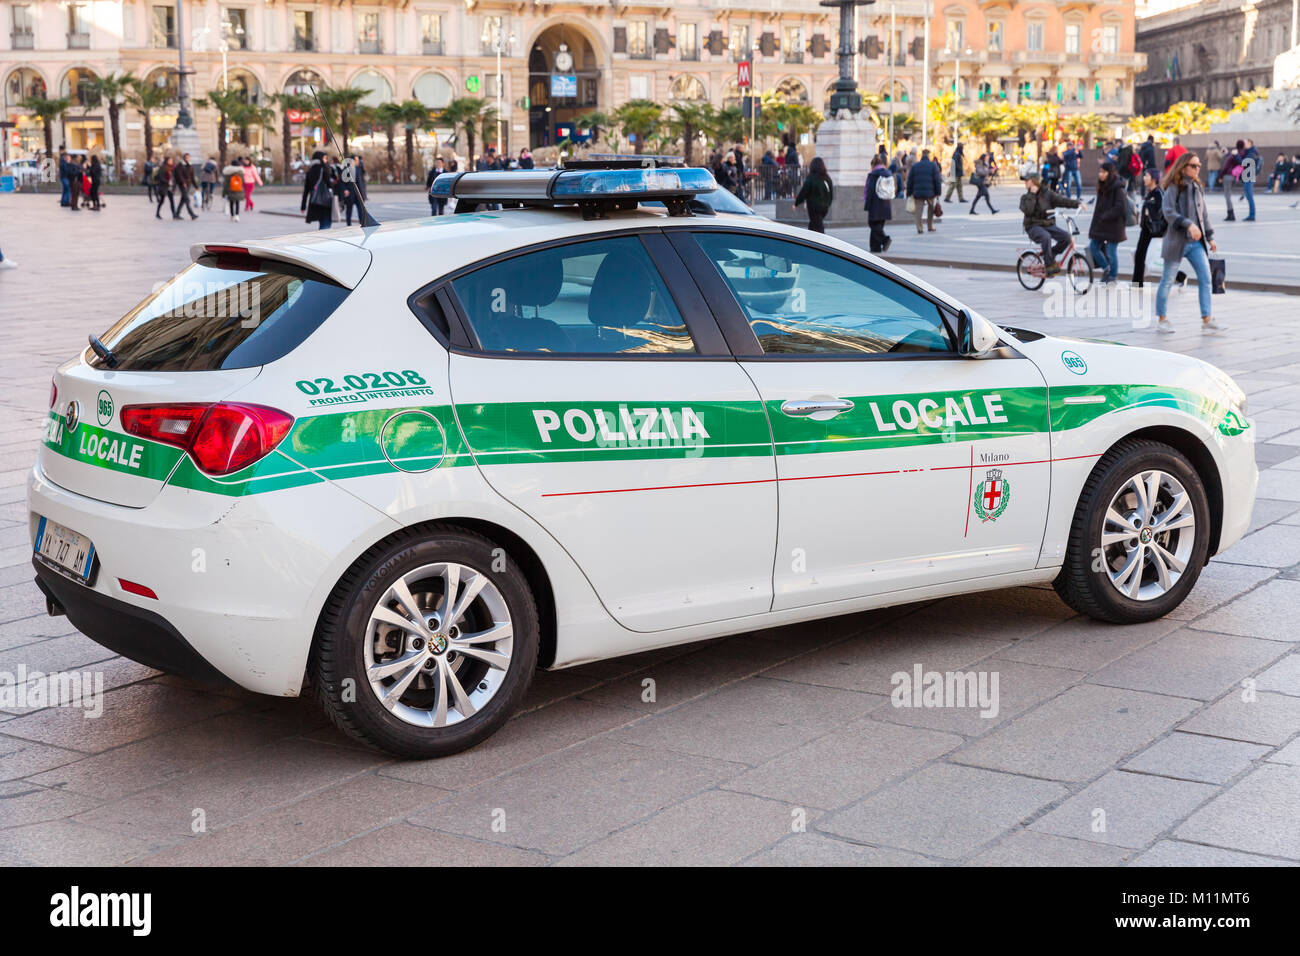 Milan, Italie - 19 janvier 2018 : Alfa Romeo Giulietta, voiture de police italienne la Piazza del Duomo de patrouilles, place centrale de la ville de Milan, vue arrière Banque D'Images